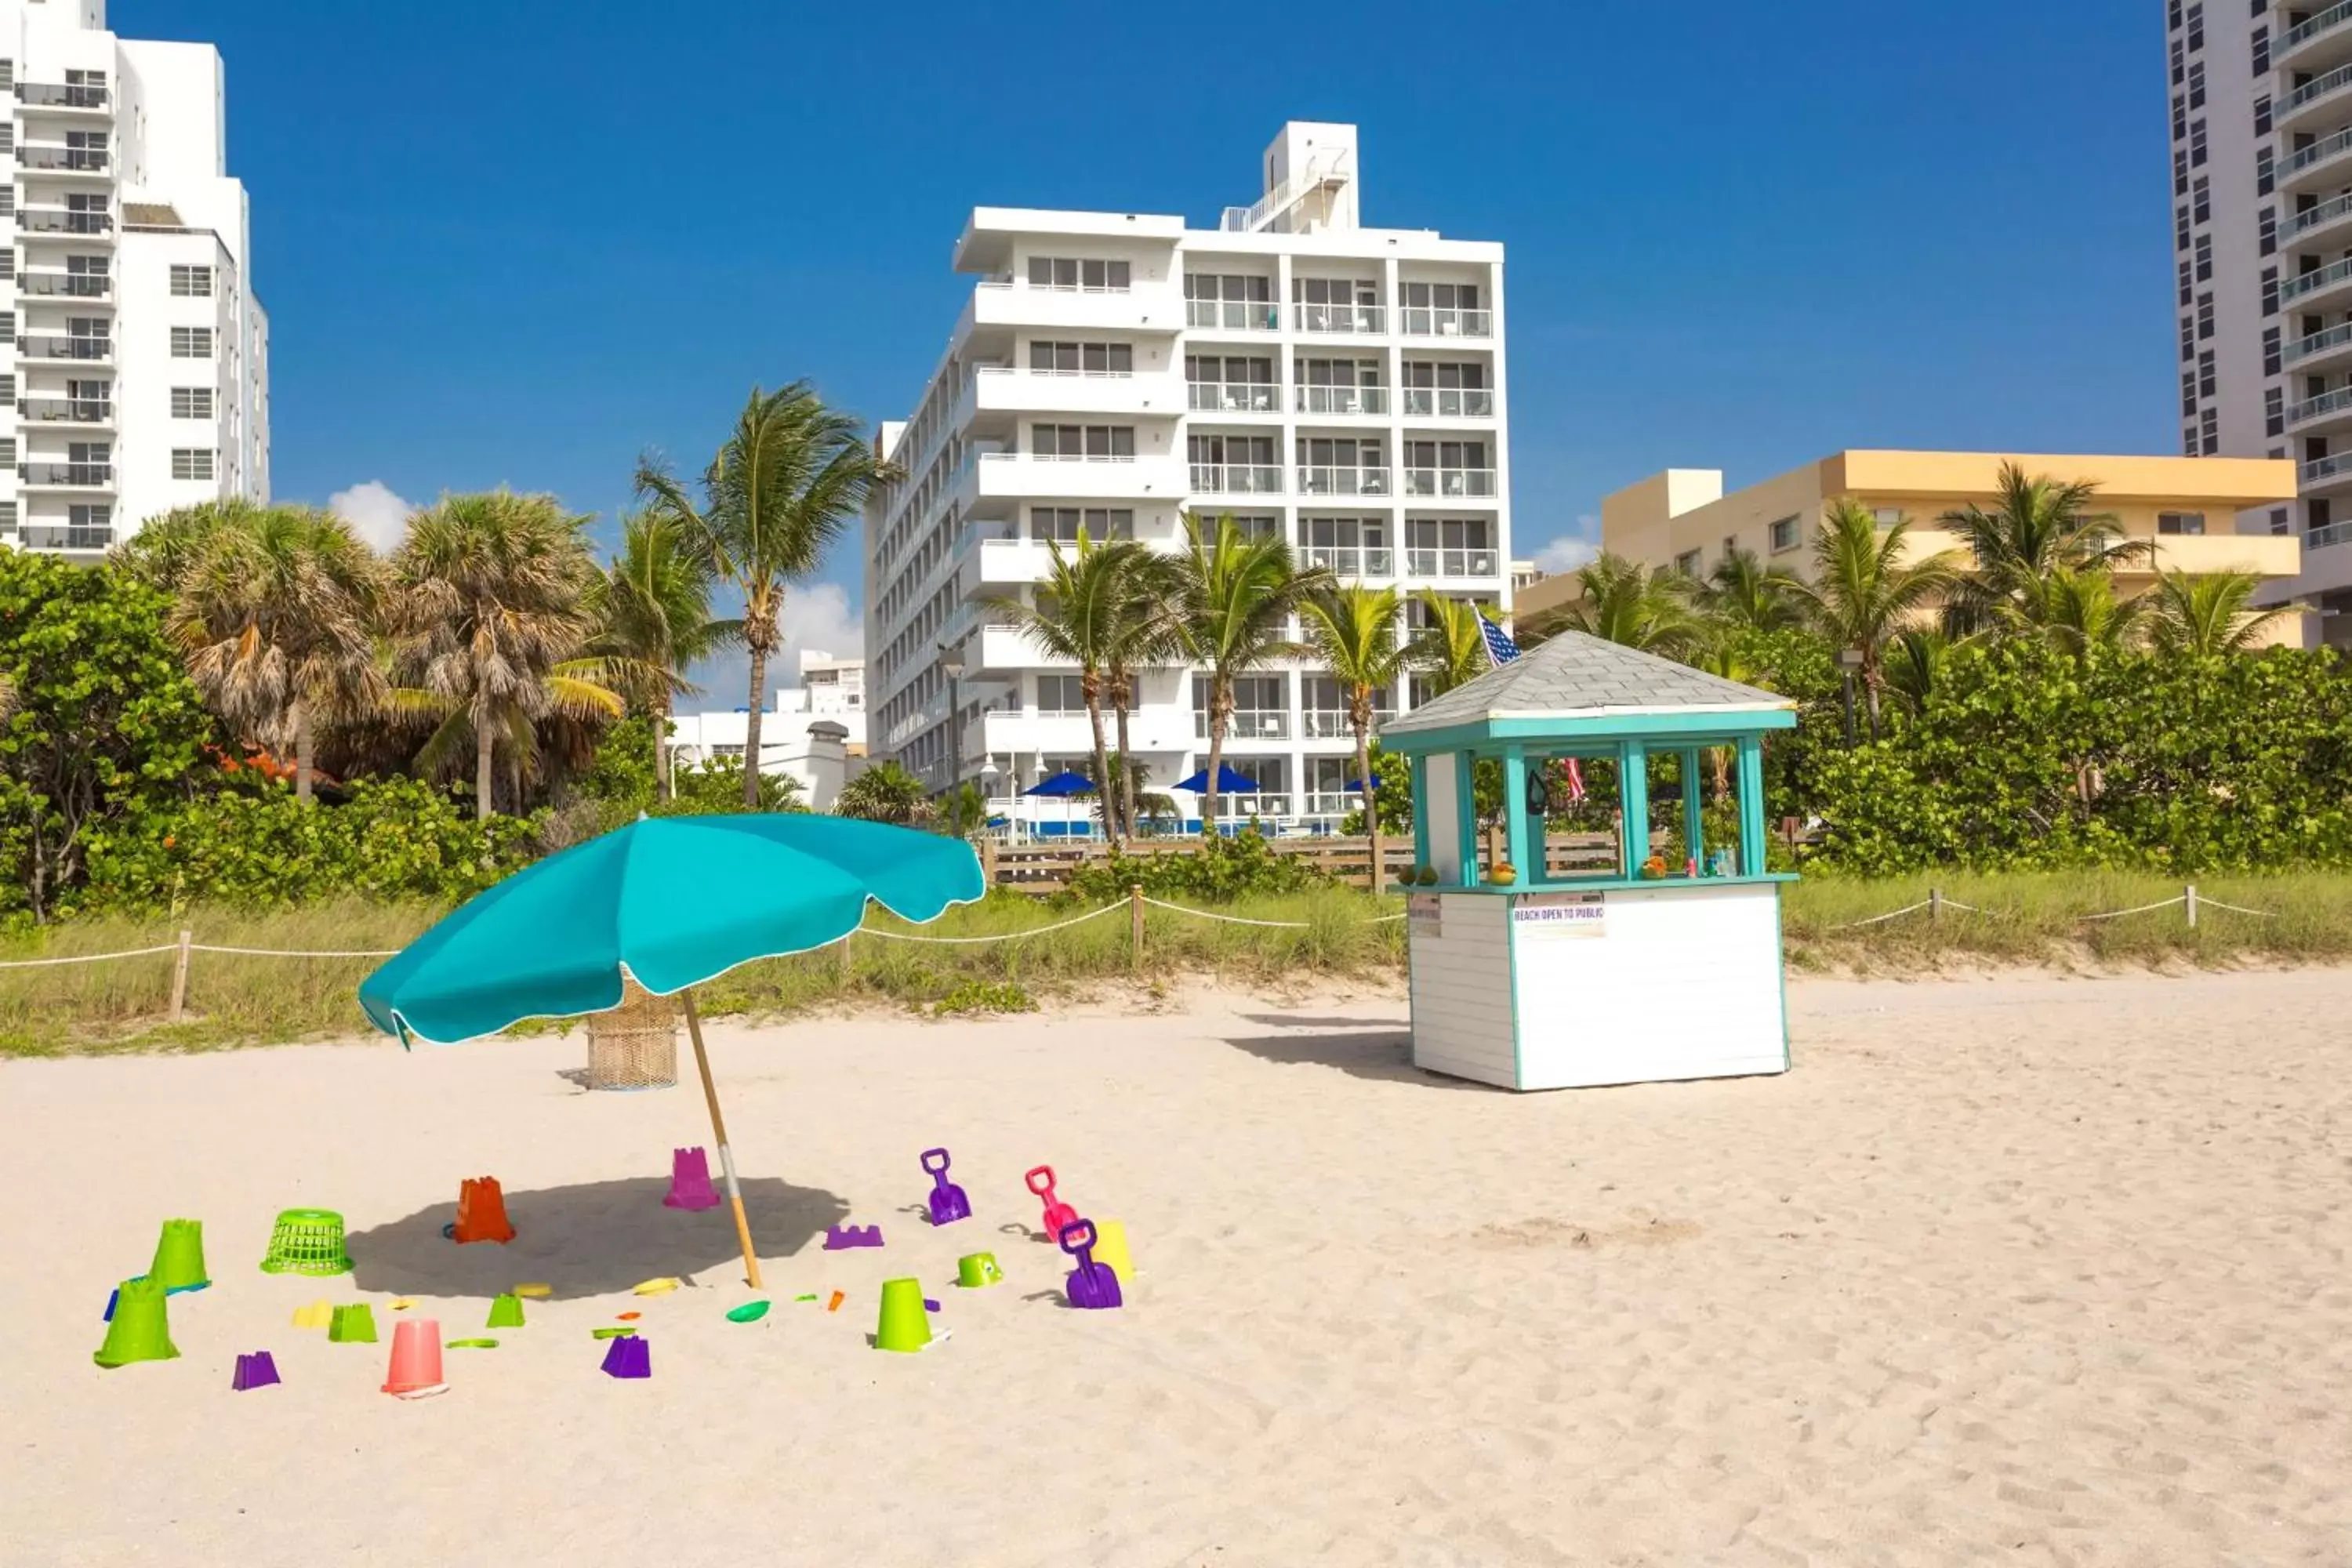 Activities in Best Western Plus Atlantic Beach Resort